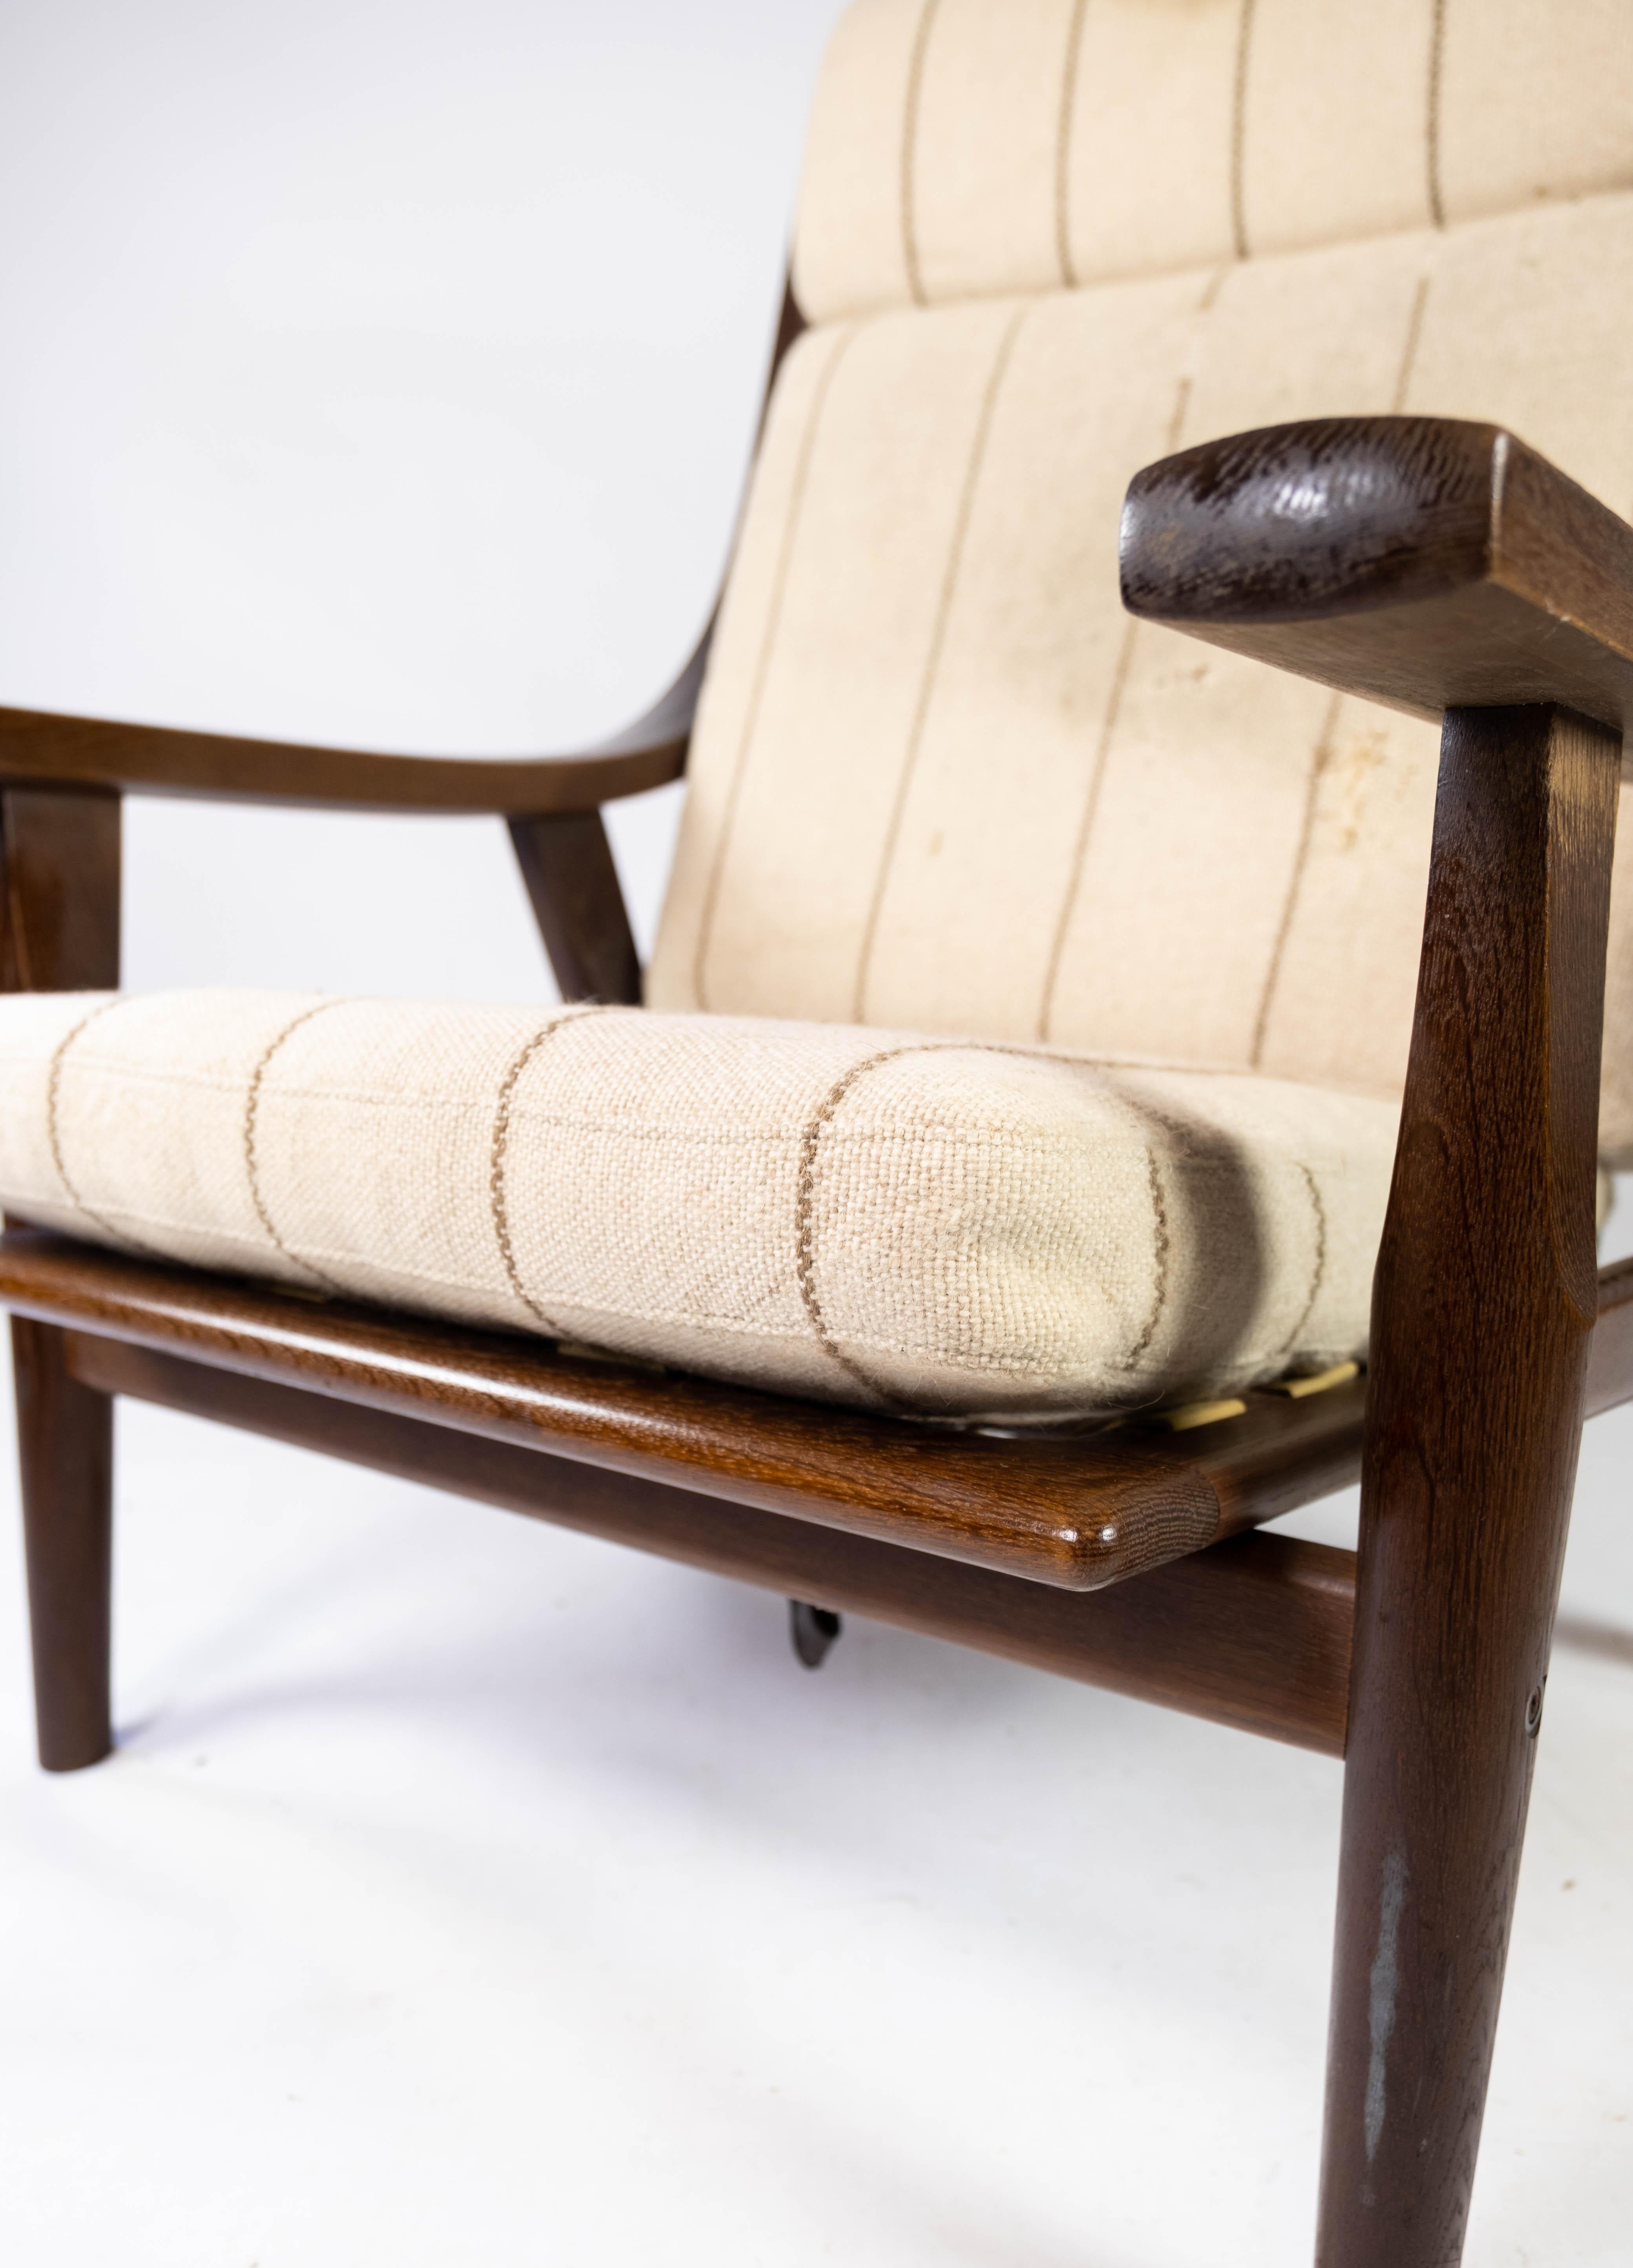 Der mit hellem Stoff bezogene Sessel aus dunkler Eiche mit der Modellnummer GE530 ist ein großartiges Beispiel für Hans J. Wegners einzigartigen Beitrag zum dänischen Möbeldesign der 1960er Jahre. Der Stuhl strahlt eine zeitlose Eleganz und